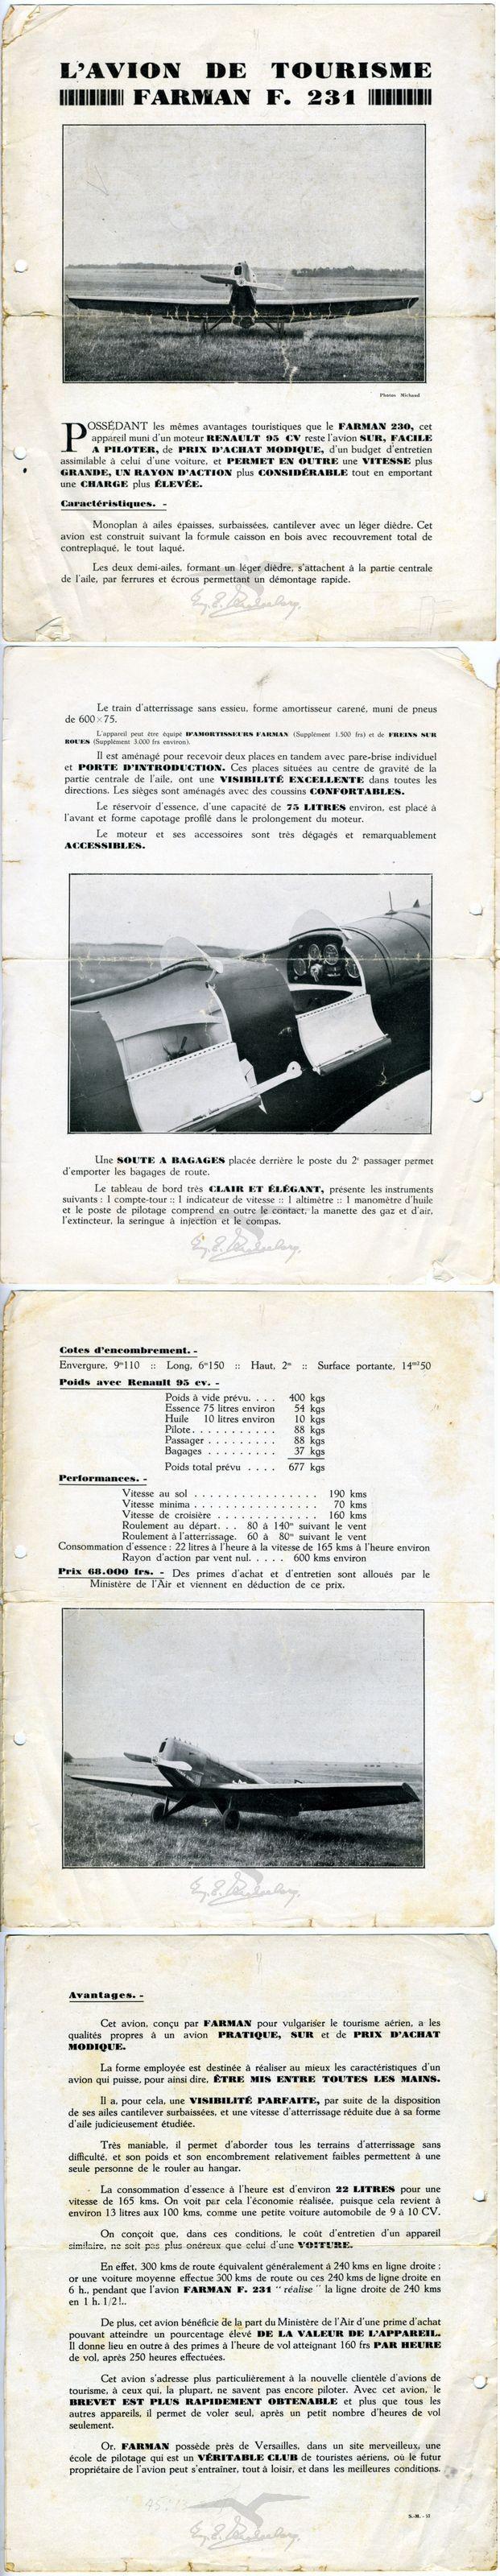 חוברת פרסומת למטוס אזרחי דו מושבי מתוצרת רנו: L'AVION DE TOURISME, FARMAN F. 231